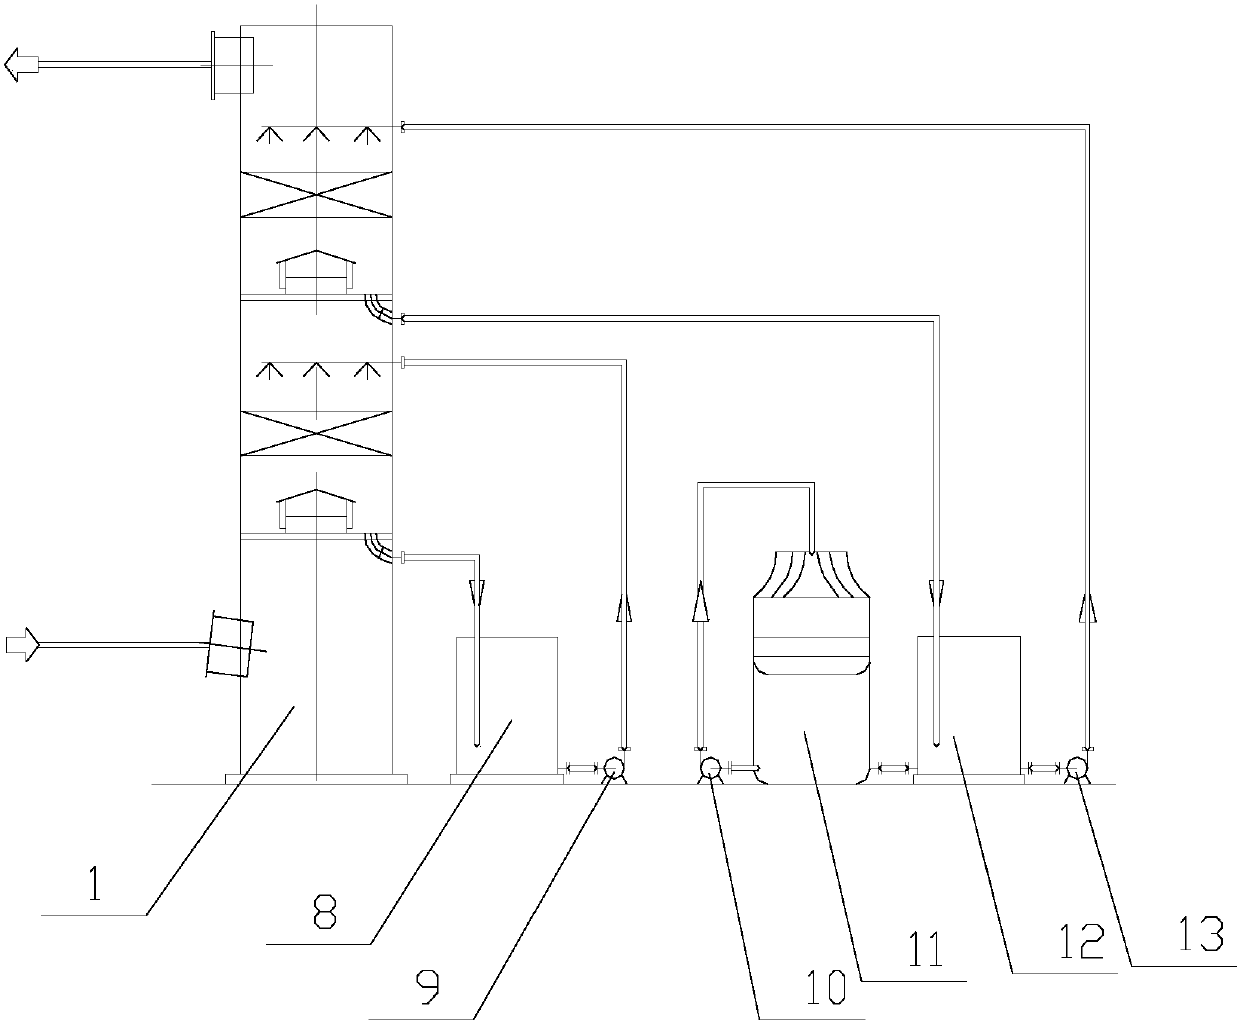 A double-membrane micro-electrostatic precipitator